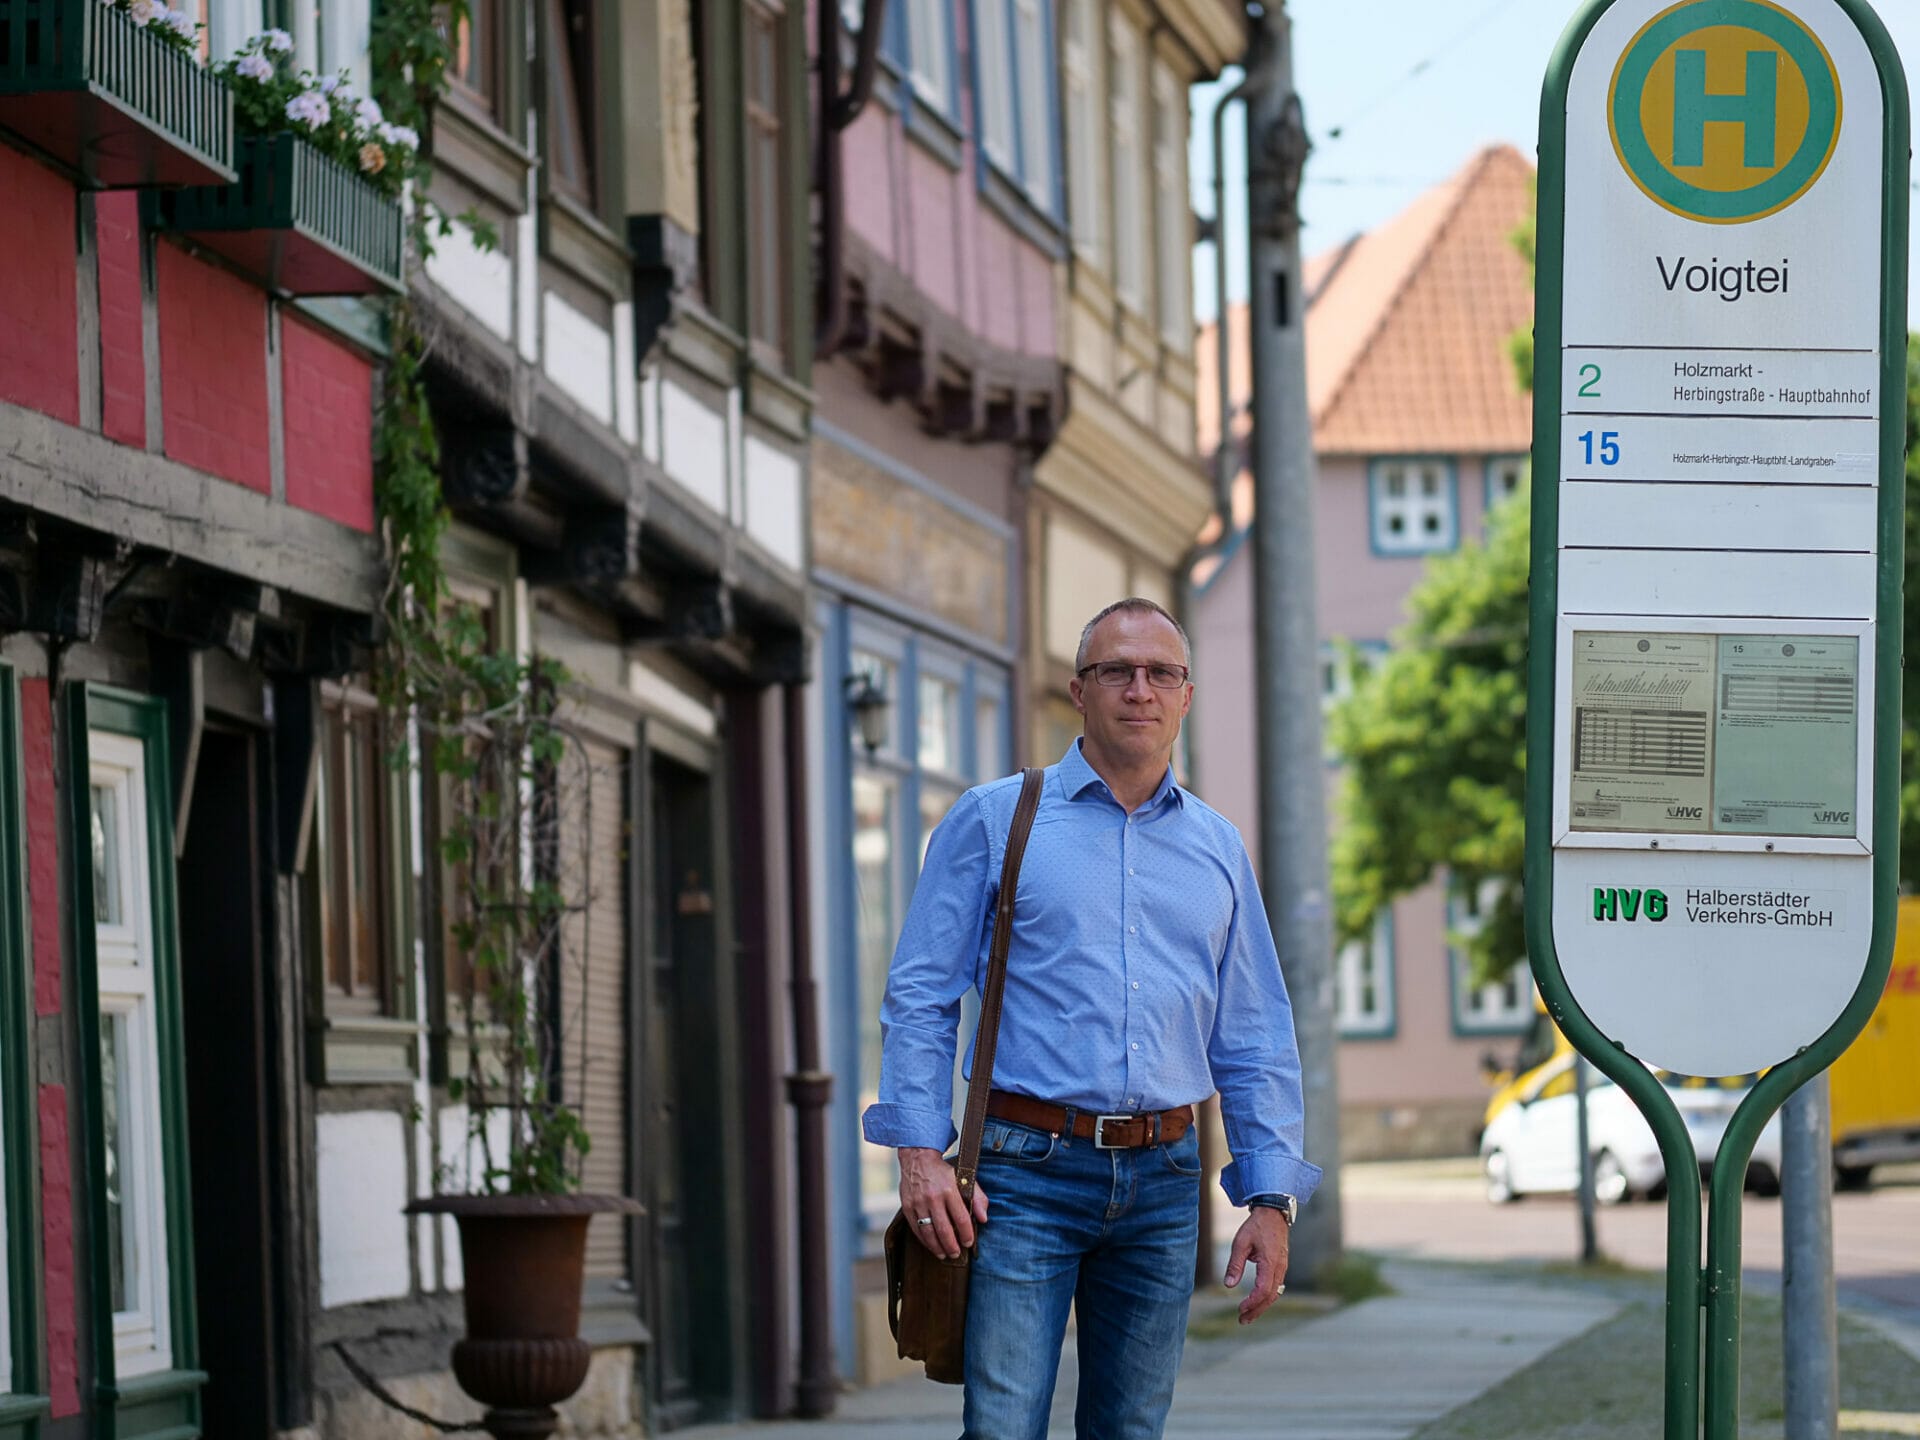 Andreas Henke, hier an der Haltestelle Voigtei, war 14 Jahre lang Oberbürgermeister in Halberstadt und ist bei der Landtagswahl 2021 in Sachsen-Anhalt für die Linke ins Parlament eingezogen. Foto: Niklas Golitschek